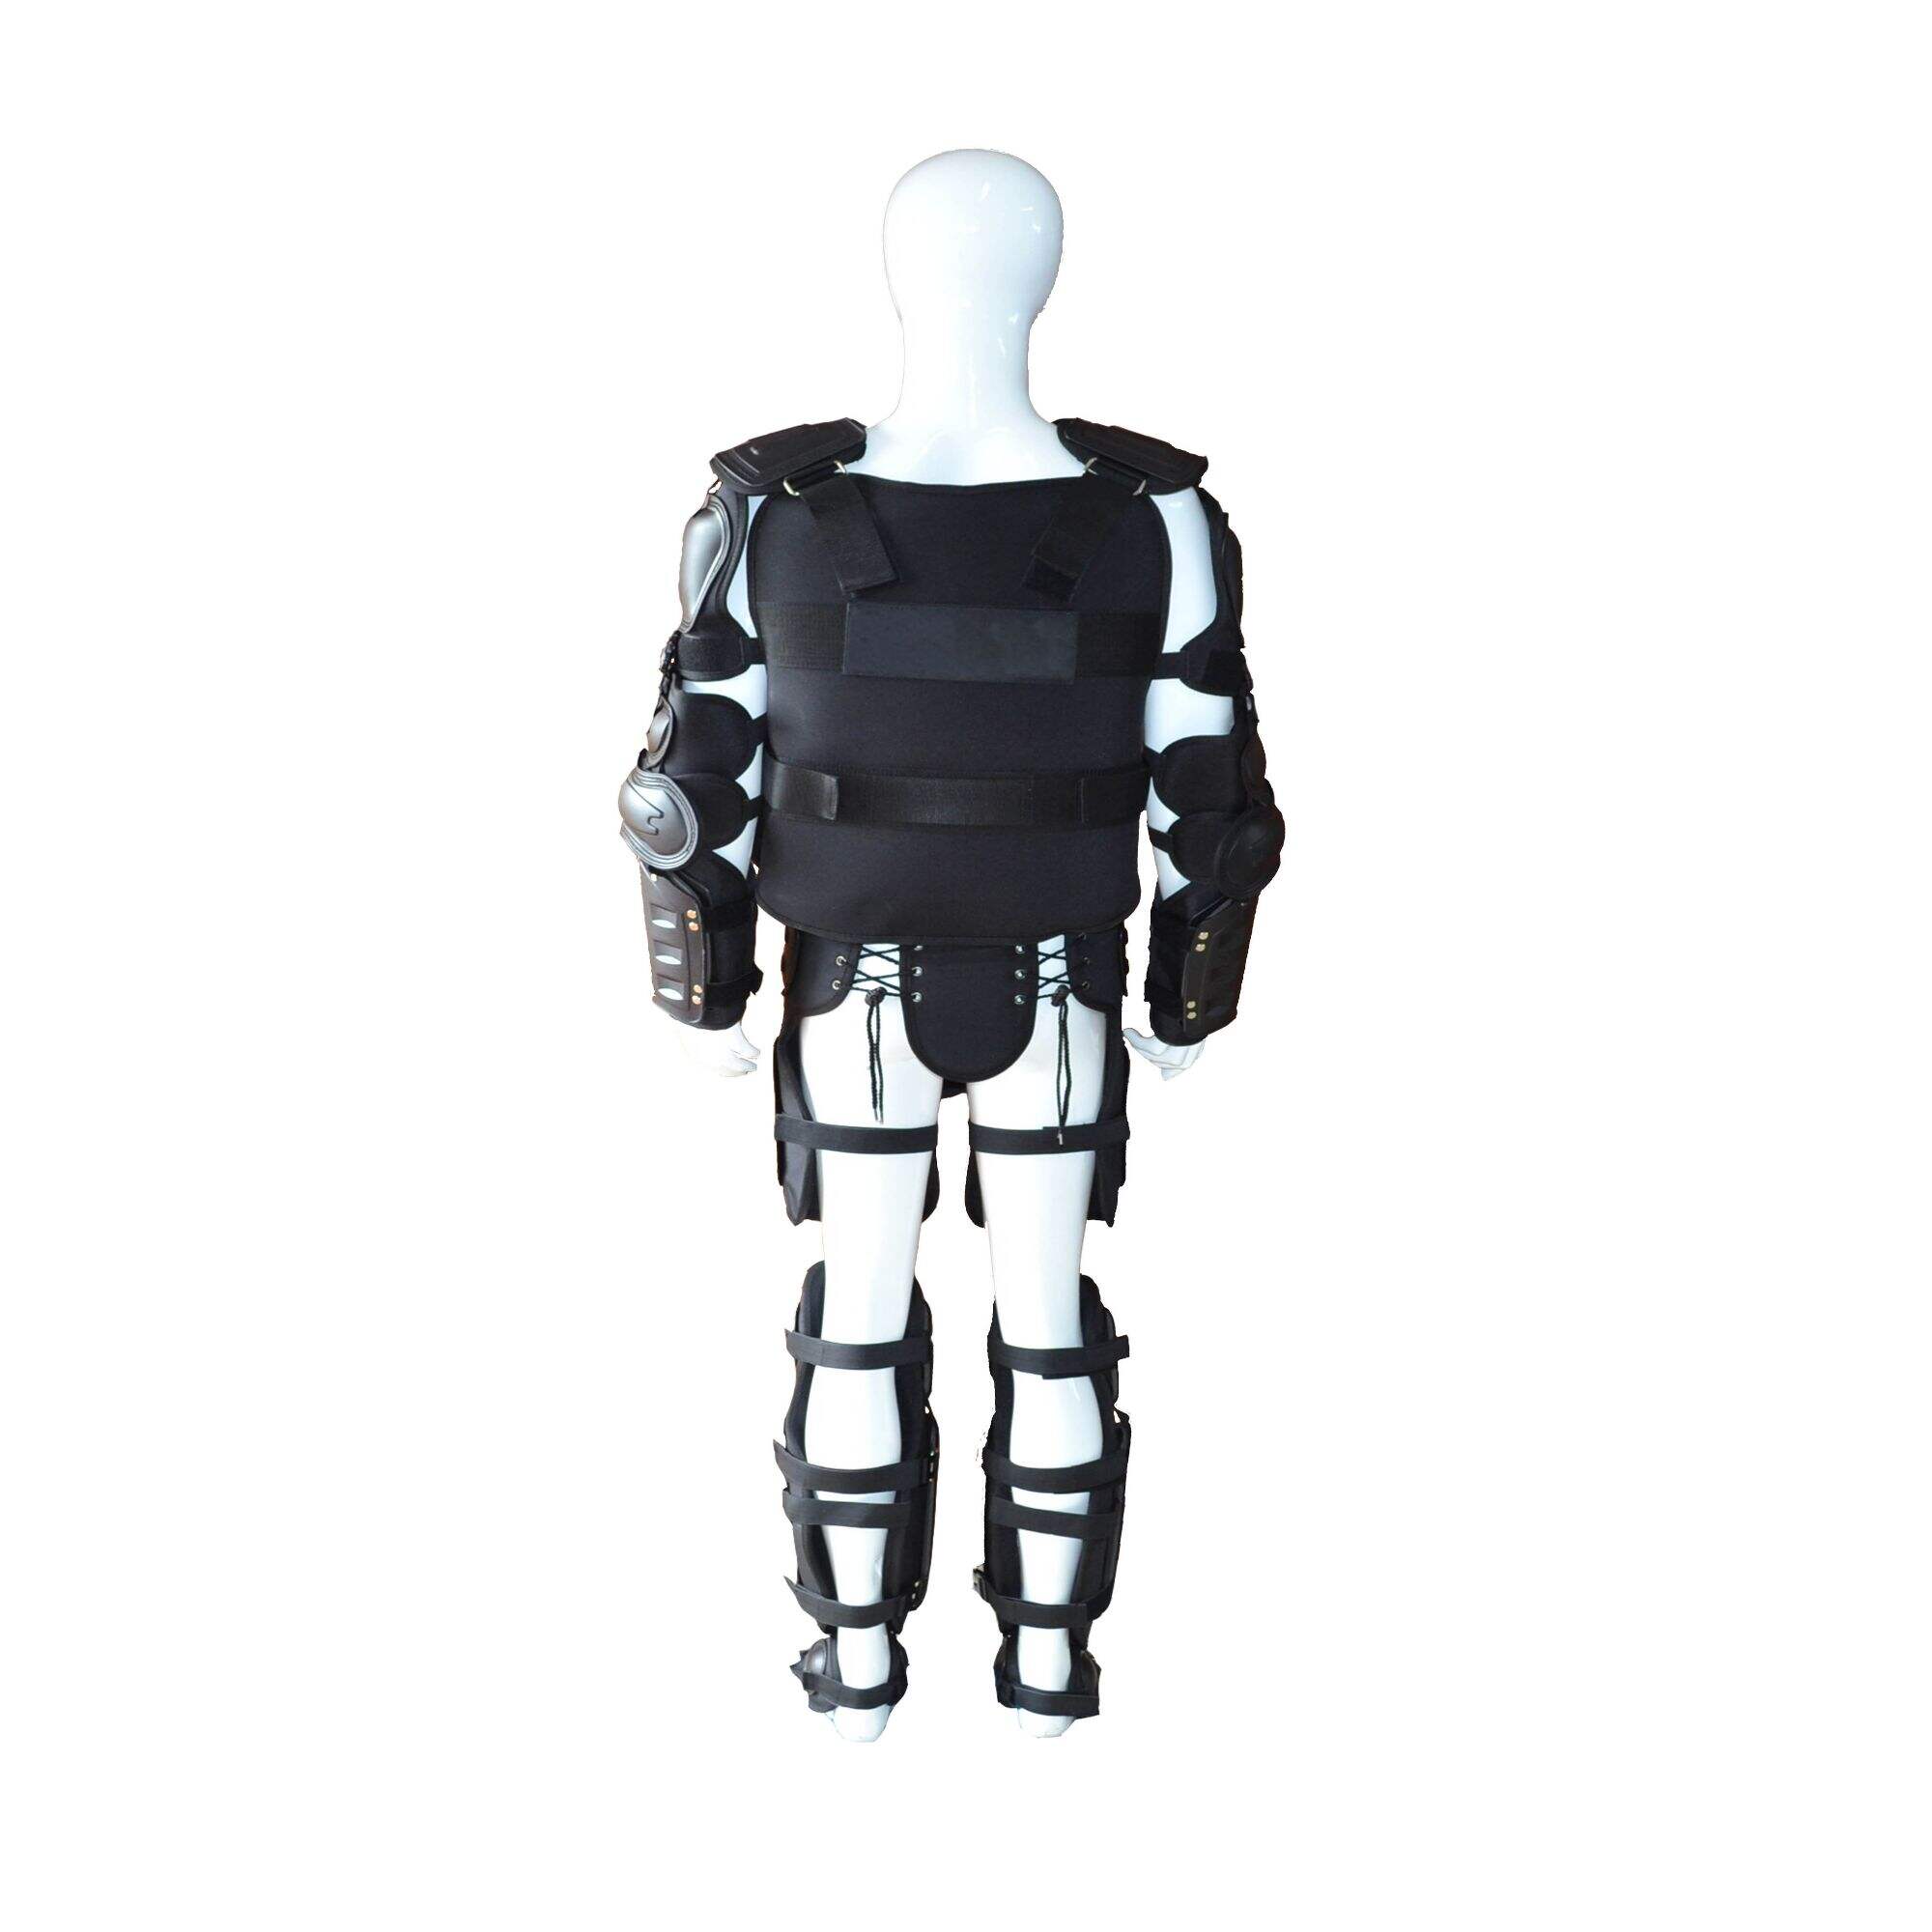 FBF-02 anti riot suit